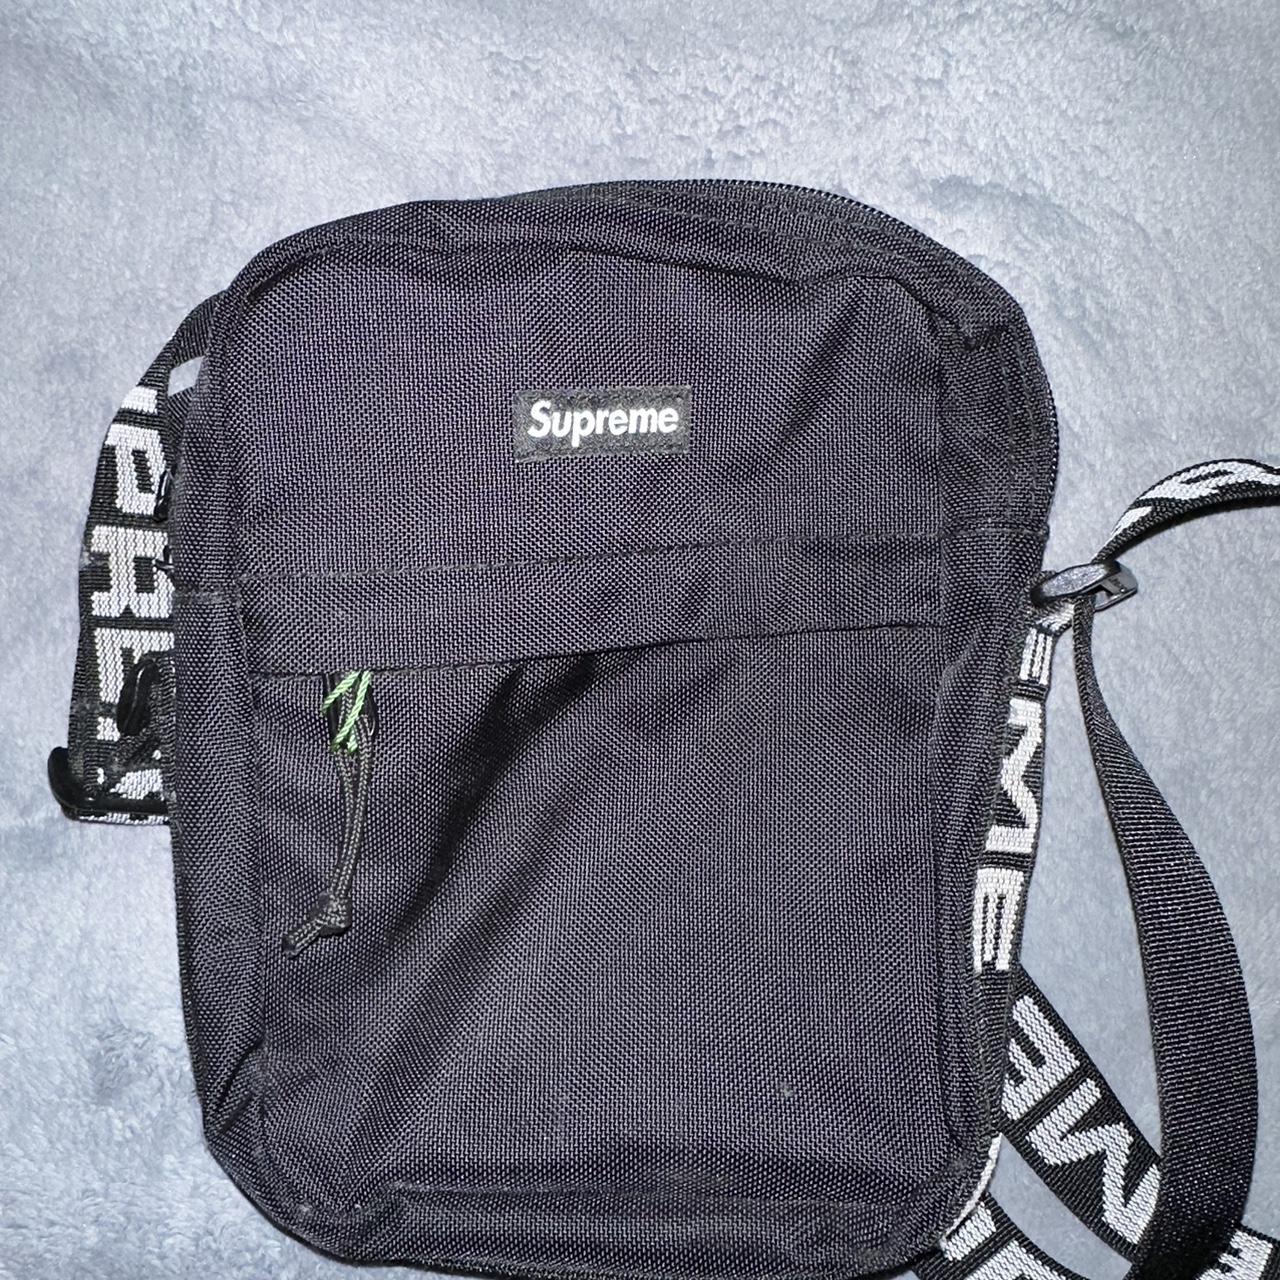 Supreme Shoulder Bag, Lightly used, in great